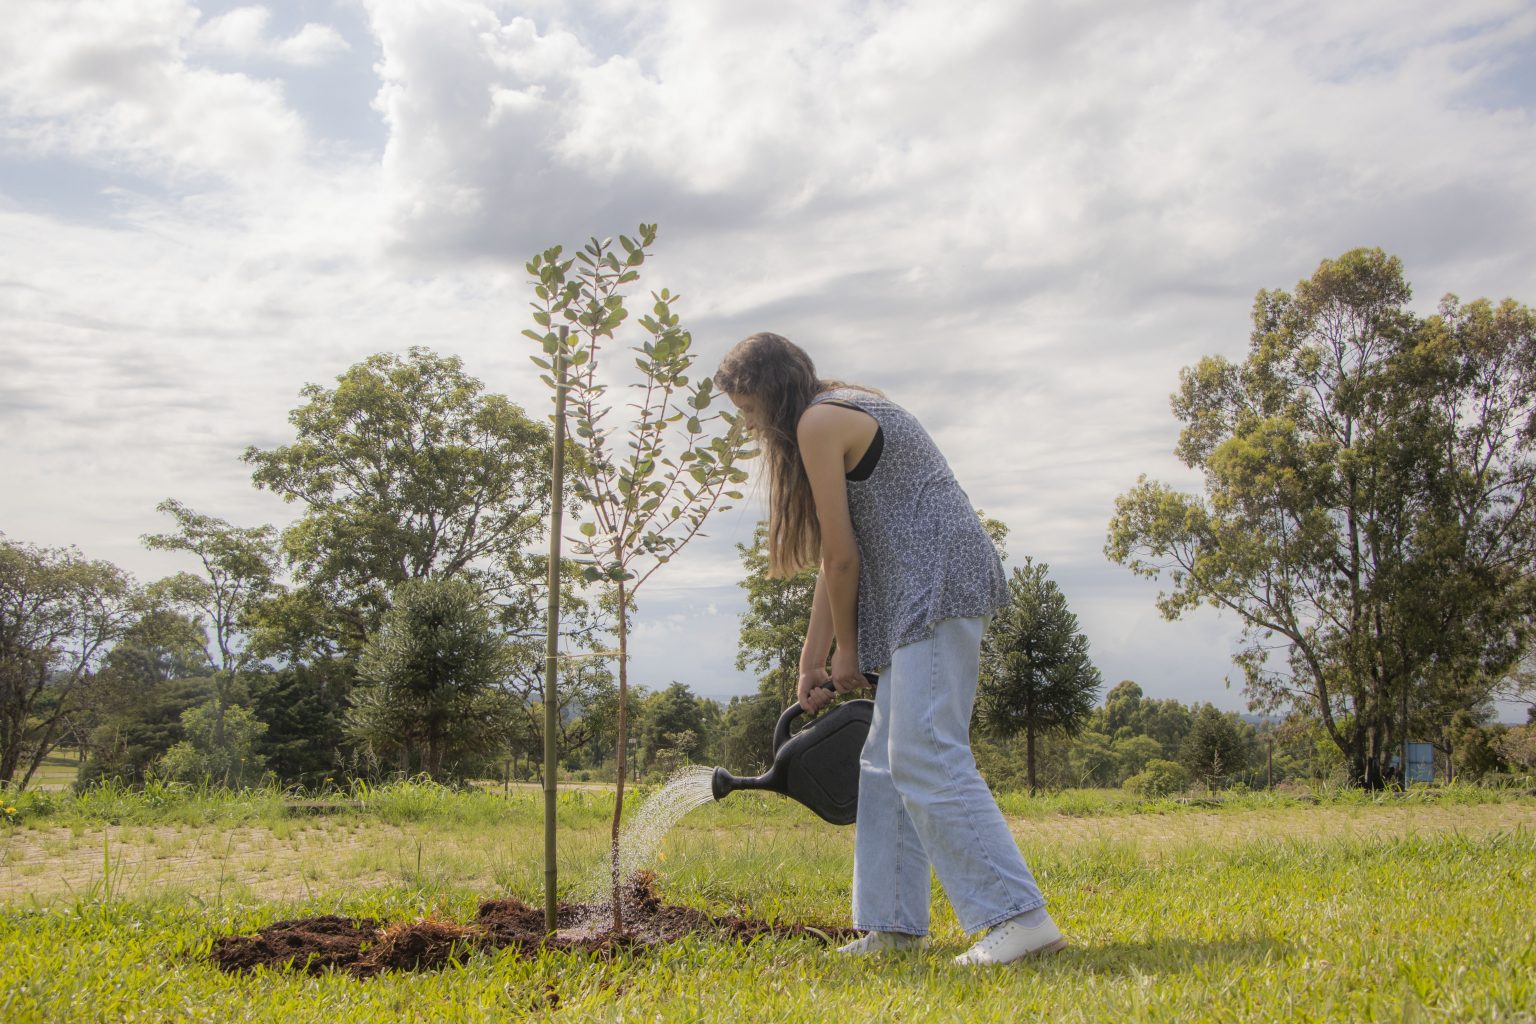 Projeto De Arborização Do Campus Uvaranas Planta árvores No Estacionamento Do Bloco F 2415